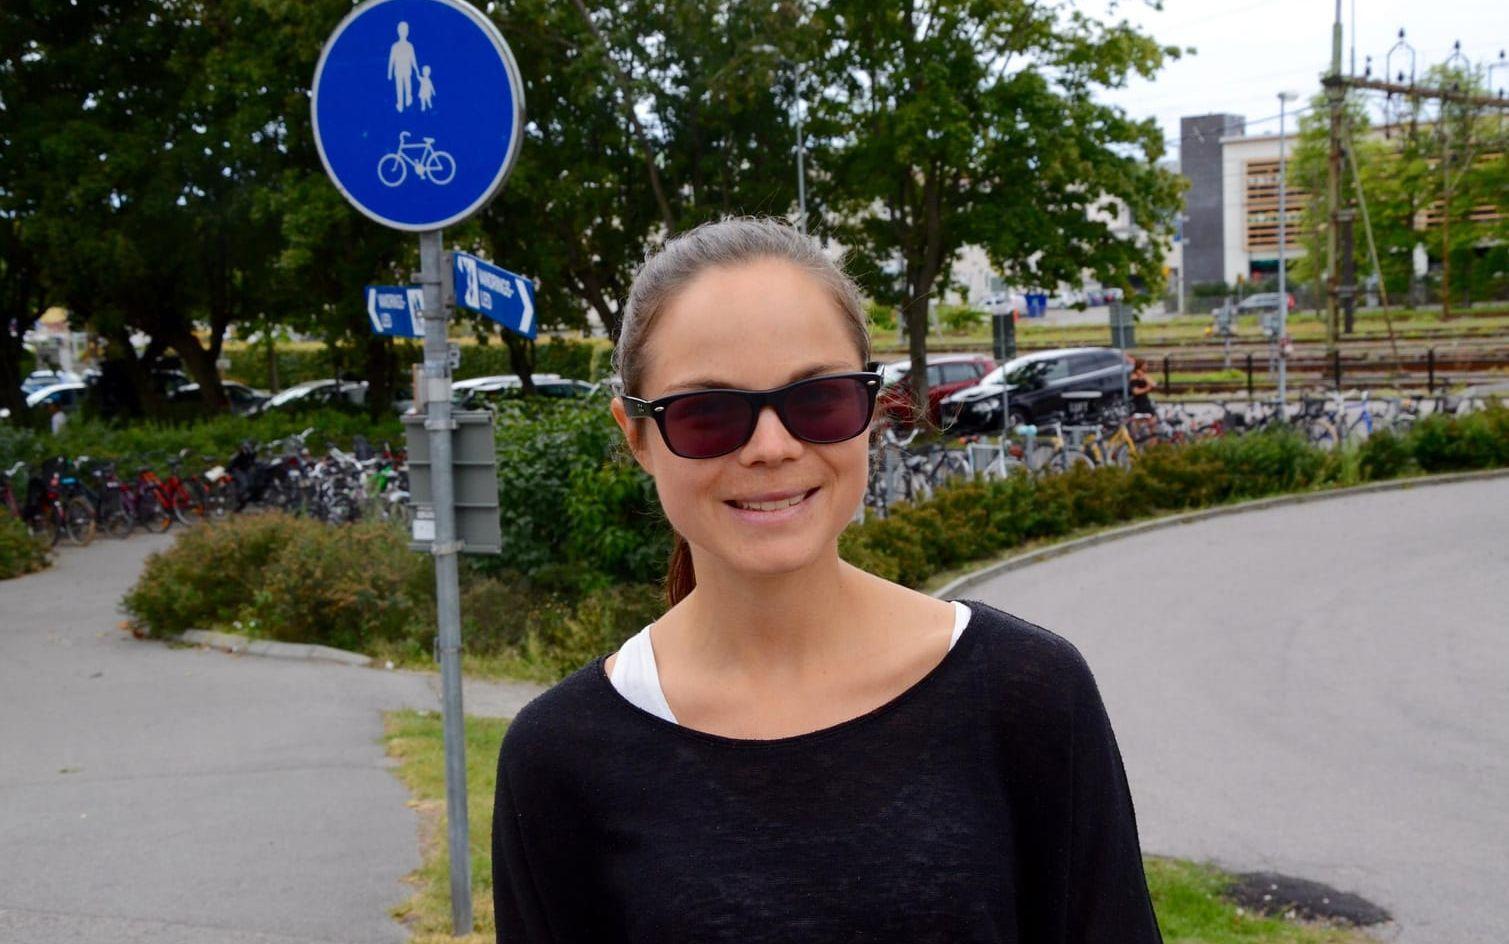 Hanna Sundquist, 26, Studerande, Lund: "Jag lyssnar lite grann och i så fall via streamingtjänst på telefonen."